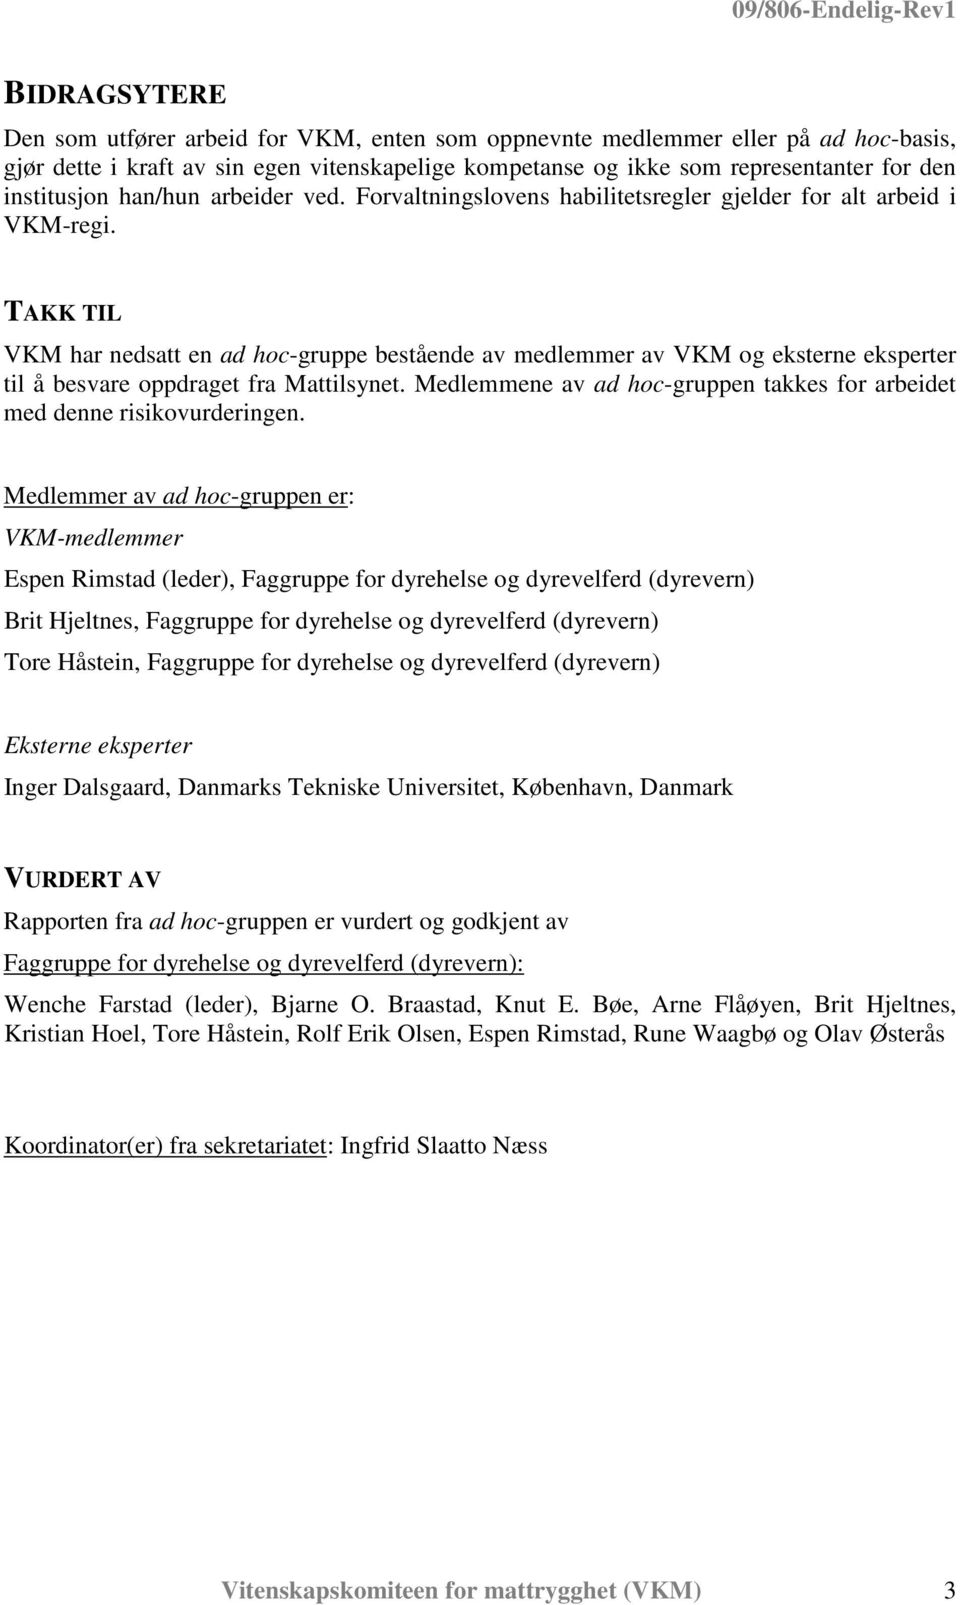 TAKK TIL VKM har nedsatt en ad hoc-gruppe bestående av medlemmer av VKM og eksterne eksperter til å besvare oppdraget fra Mattilsynet.